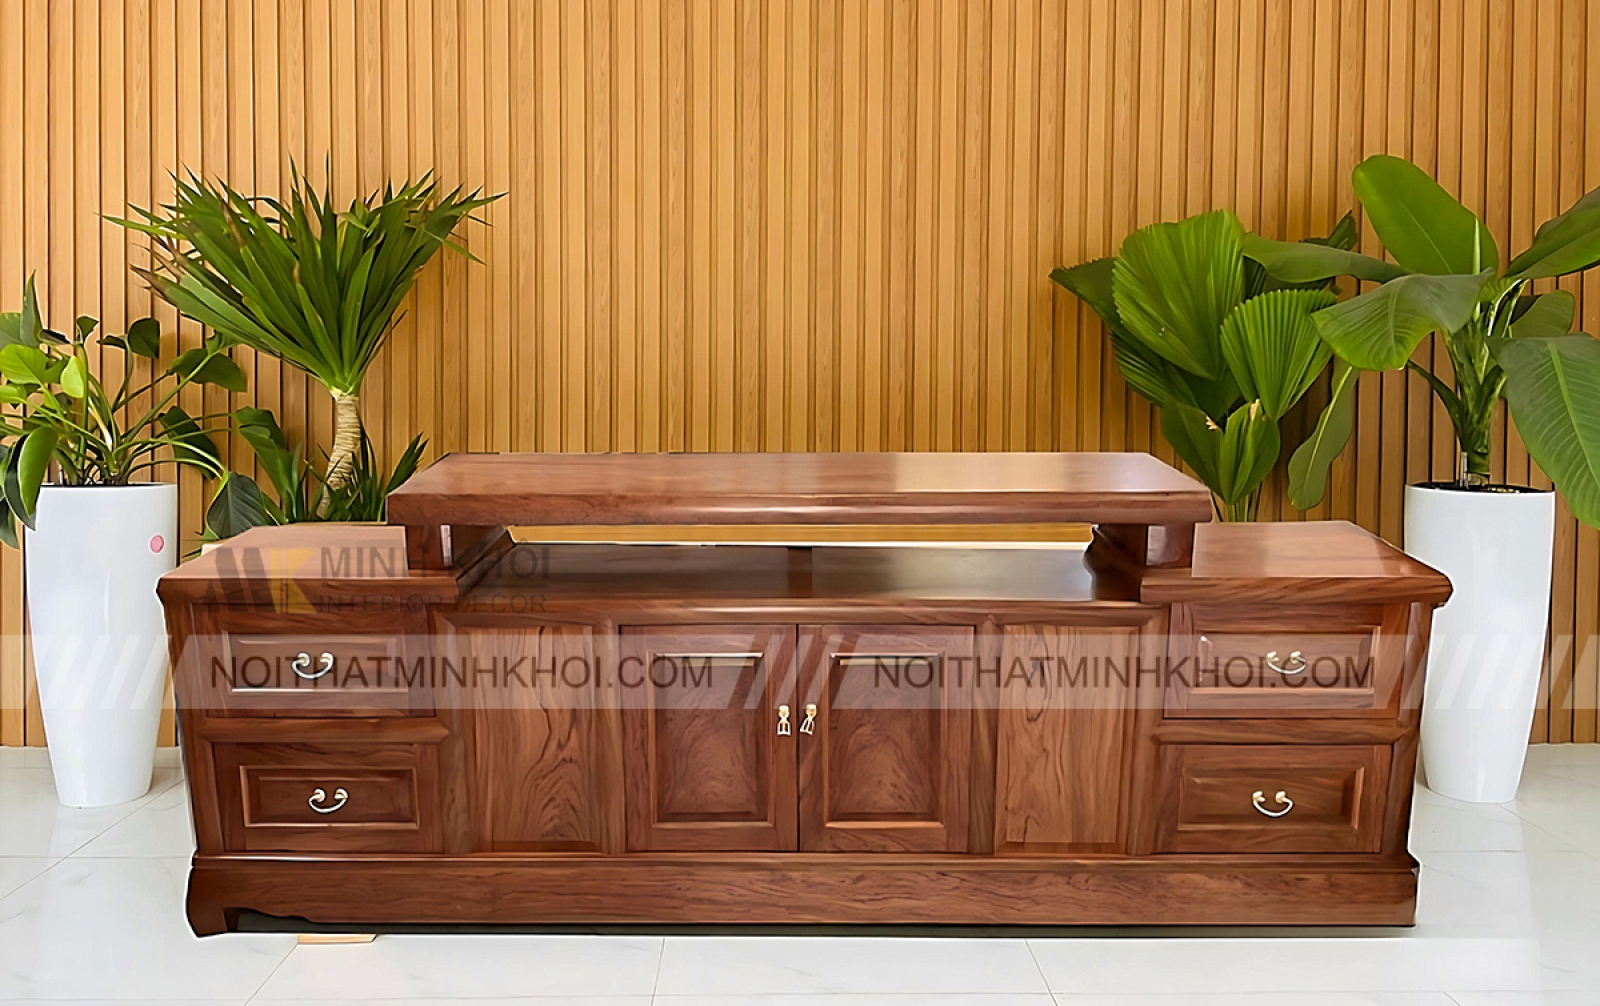 Kệ Để Tivi Gỗ Tự Nhiên Hiện Đại KTV914 là sự lựa chọn tốt nhất cho bạn, nếu bạn đang muốn trang trí phòng khách của mình với sản phẩm gỗ tự nhiên. Với thiết kế đơn giản nhưng tinh tế cùng chất liệu gỗ tự nhiên, sản phẩm này sẽ là điểm nhấn cho không gian sống của bạn. Bạn có thể sắp xếp TV, đồ trang trí và sách lên kệ đựng tivi này để tăng tính thẩm mỹ cho phòng khách của mình.